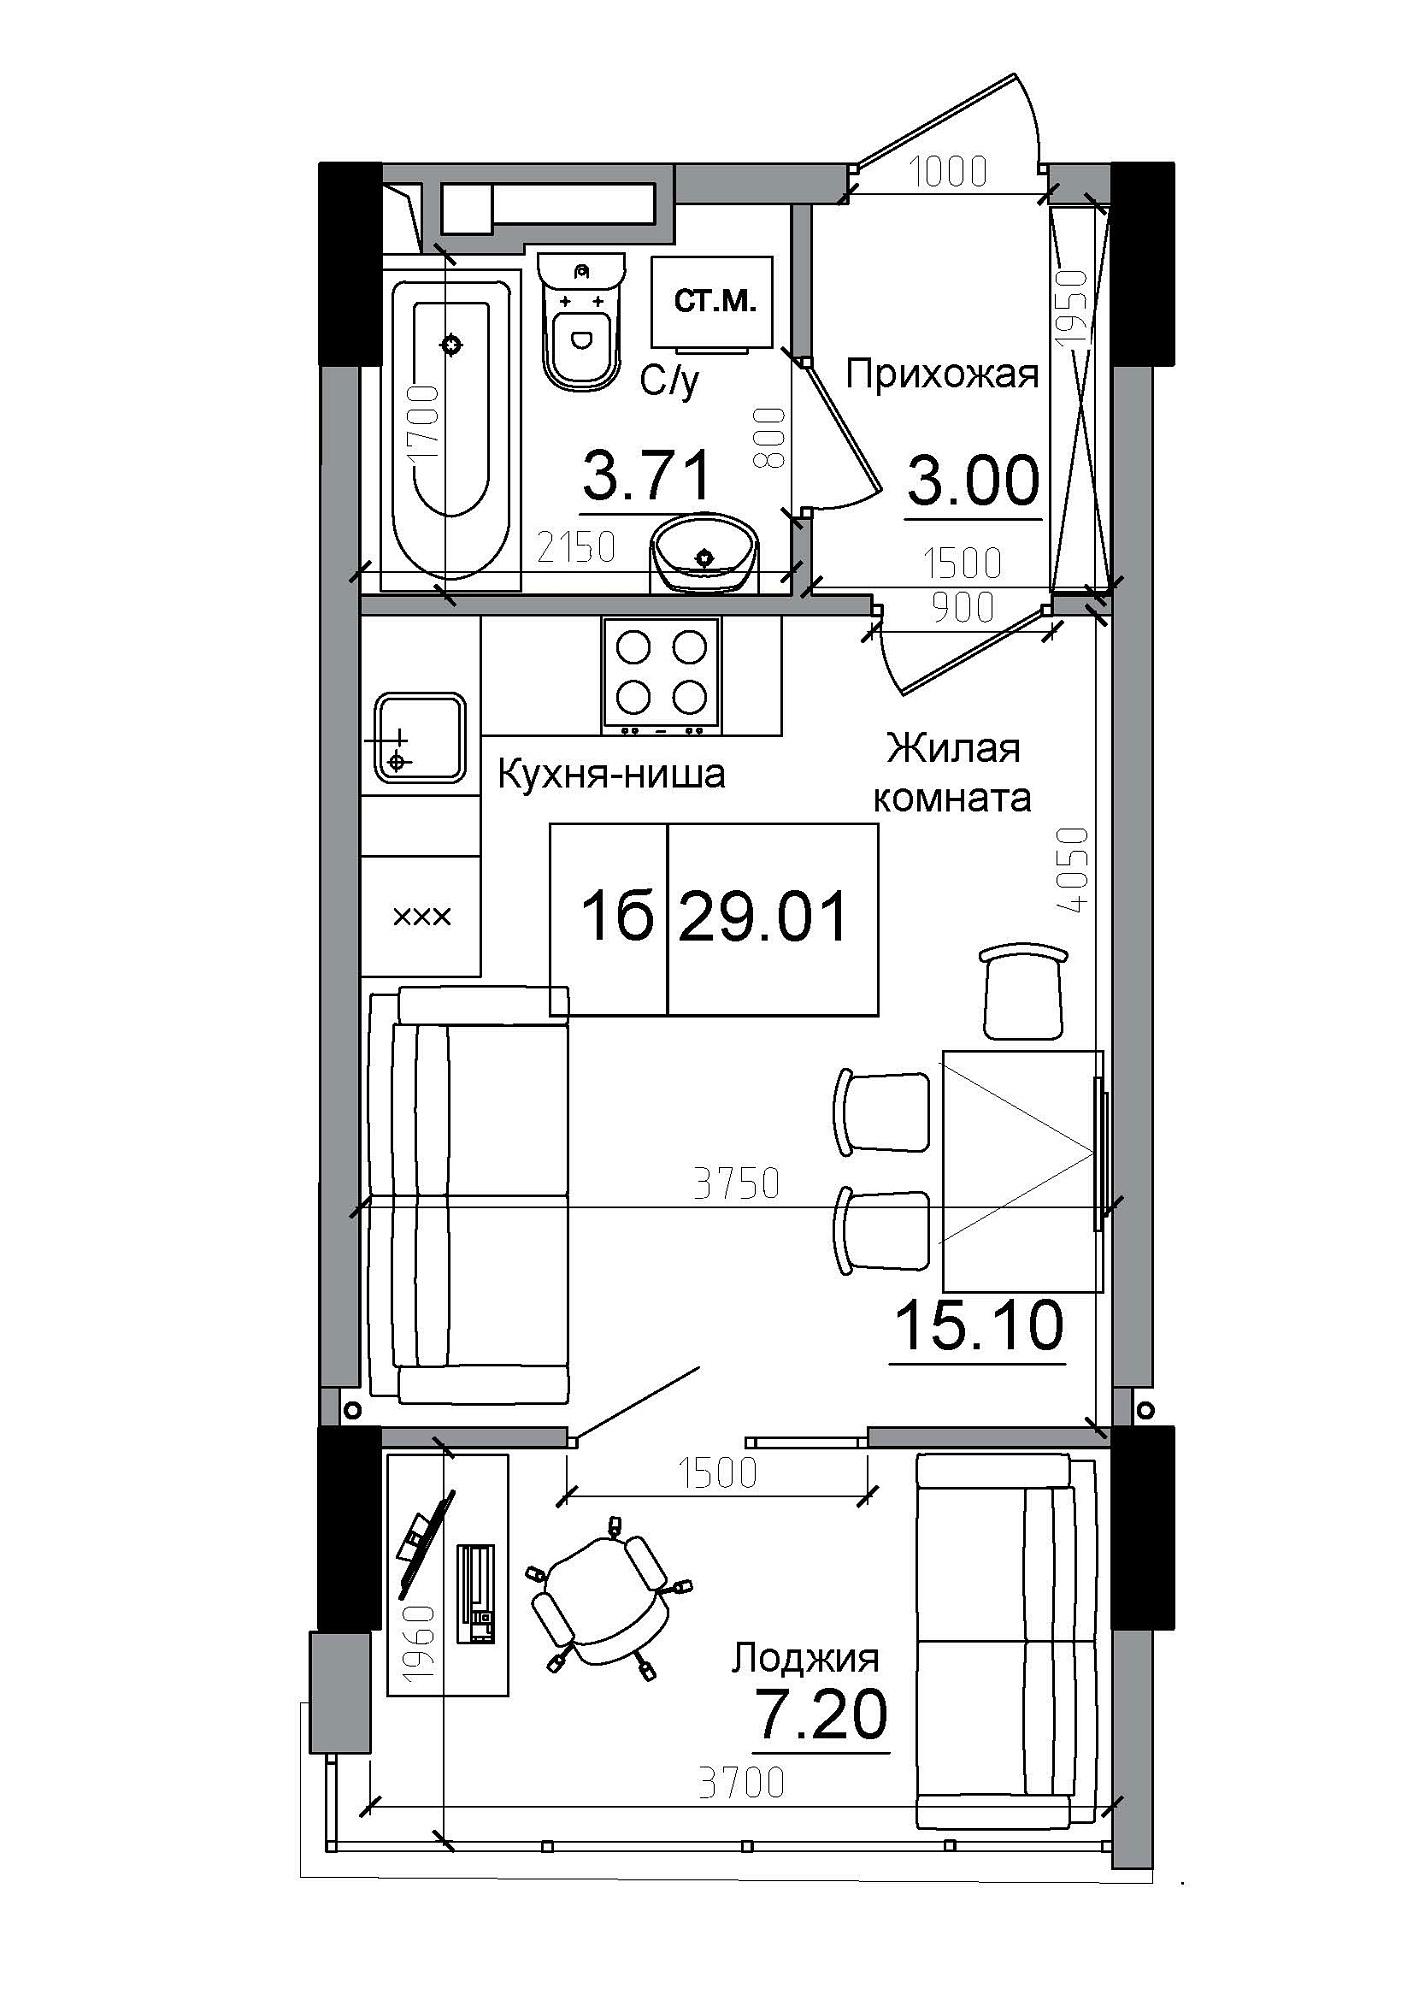 Планування Smart-квартира площею 29.01м2, AB-12-02/00002.